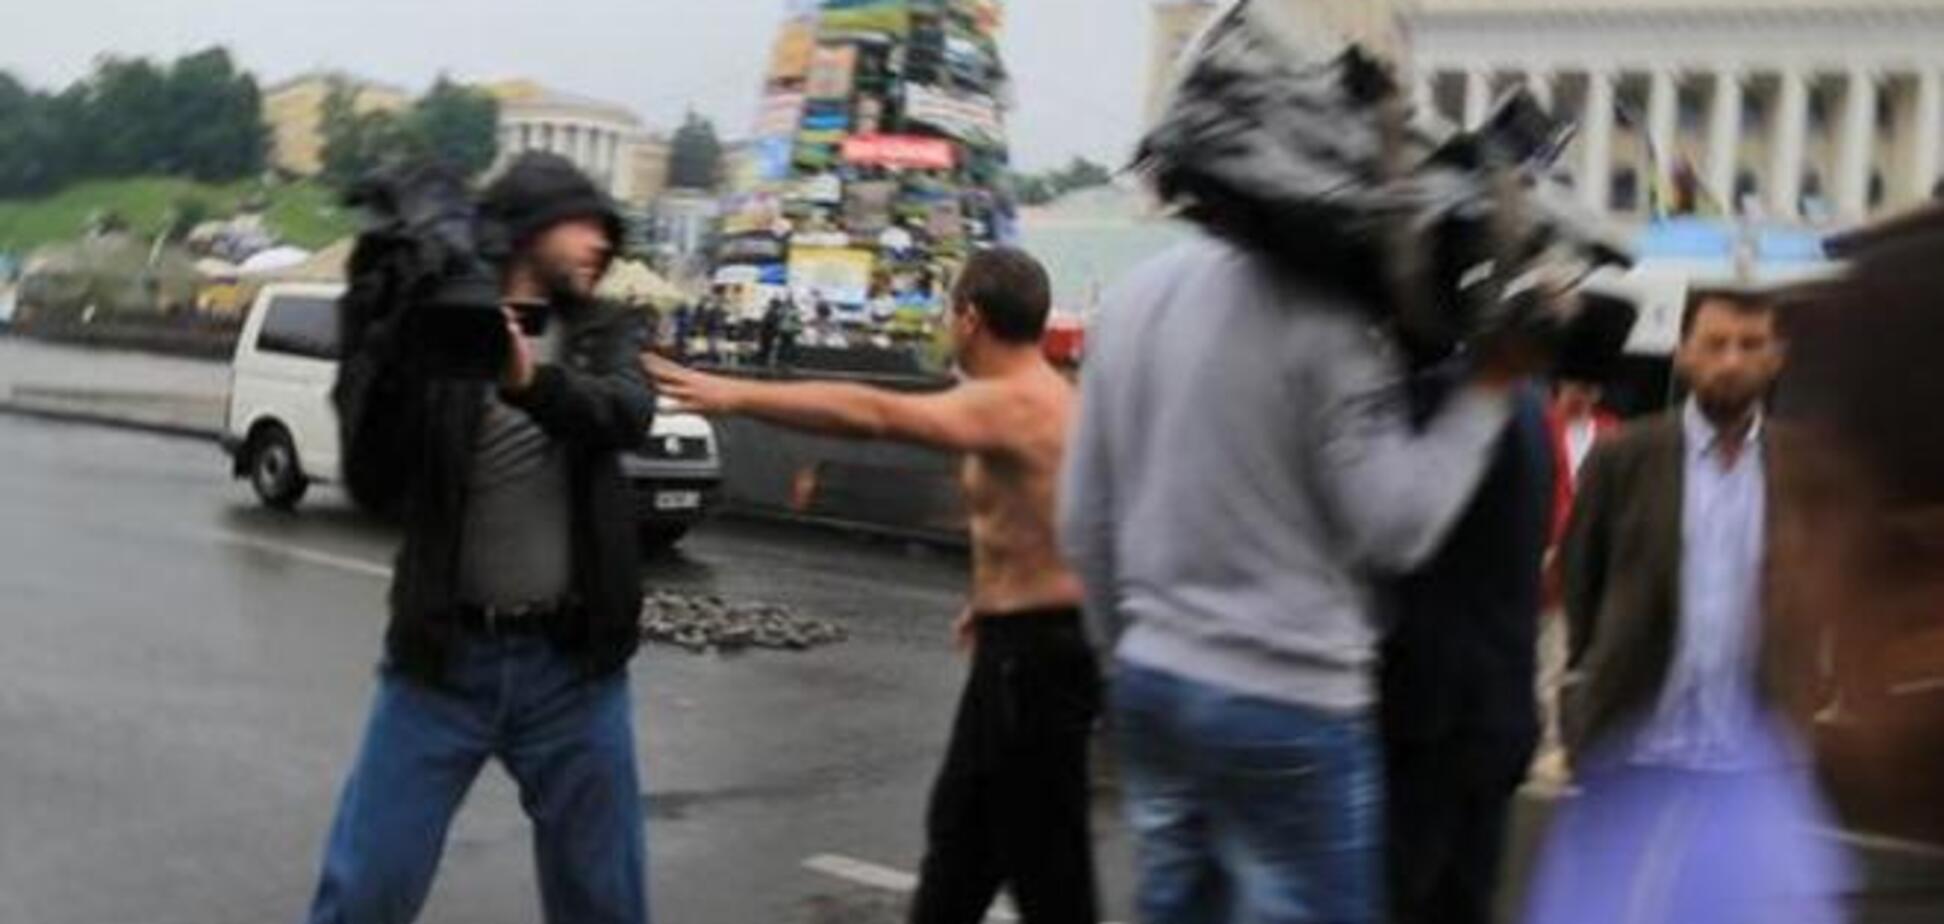 С Майдана выгнали журналистов, пришедших освещать субботник. Видеофакт